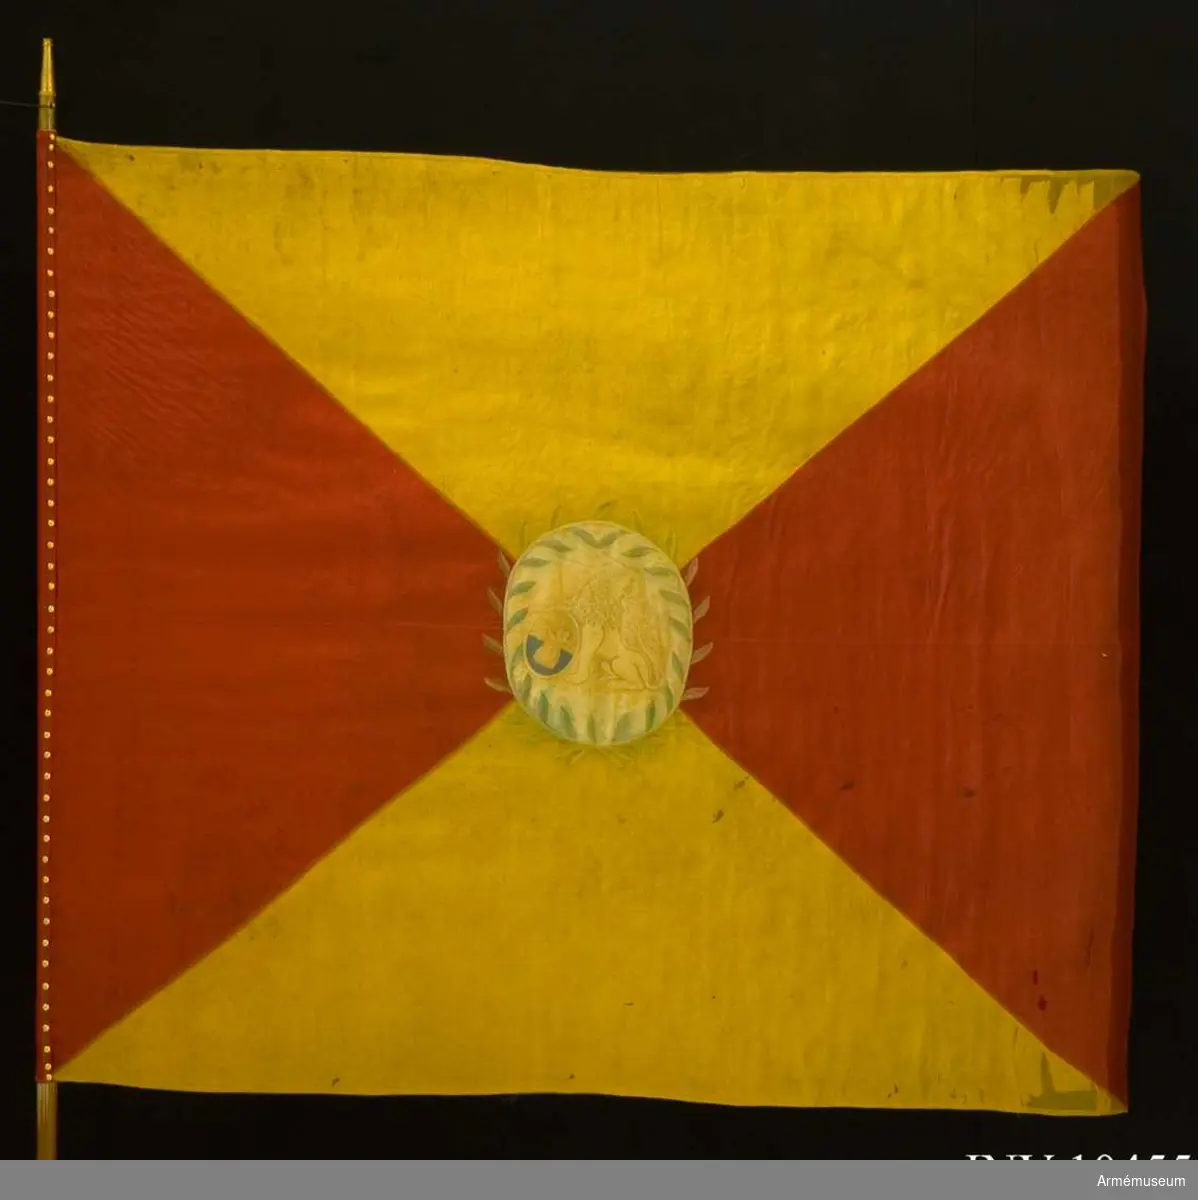 Kompanifana för Adlercreutzska regementet, som 1807 sytts om till kompanifana för Norra och Södra Skånska infanteriregementet 1812. 

Duk av sidenkypert, fyrstyckad röd och gul, i mitten broderat en sköld med Skånes vapen, omgivet av en lagerkrans.